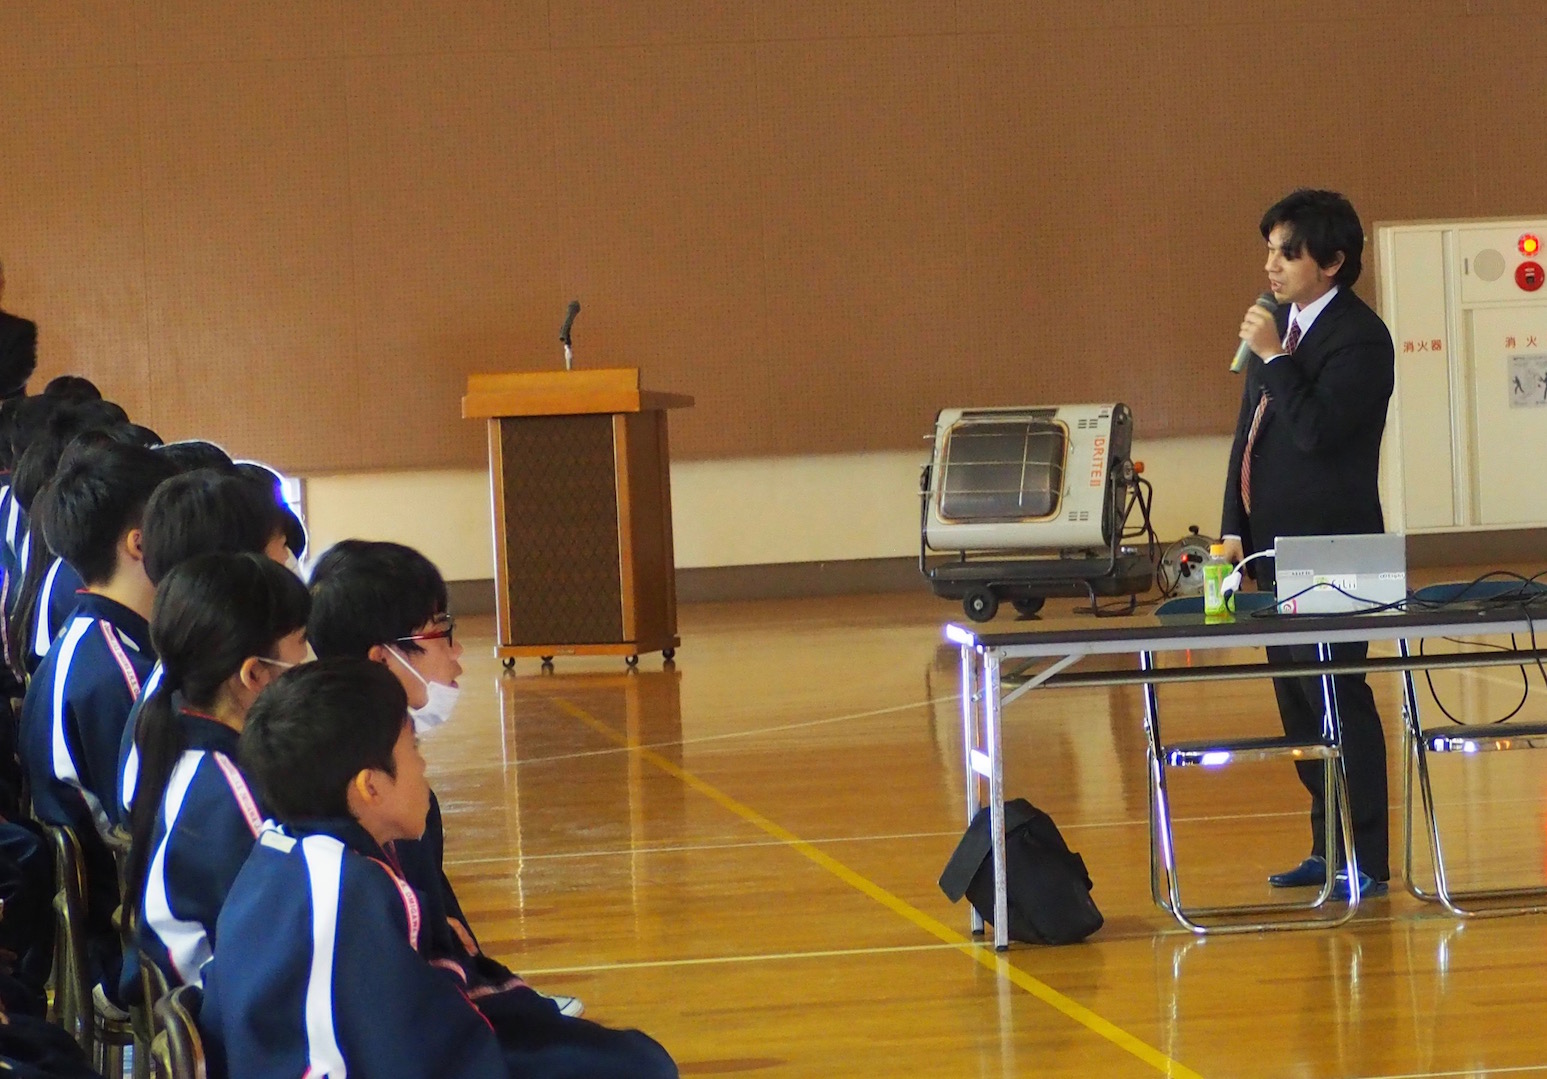 「スマホ・インターネットの安全な使い方」と題して千葉県香取市立小見川中学校で啓発講演を実施いたしました